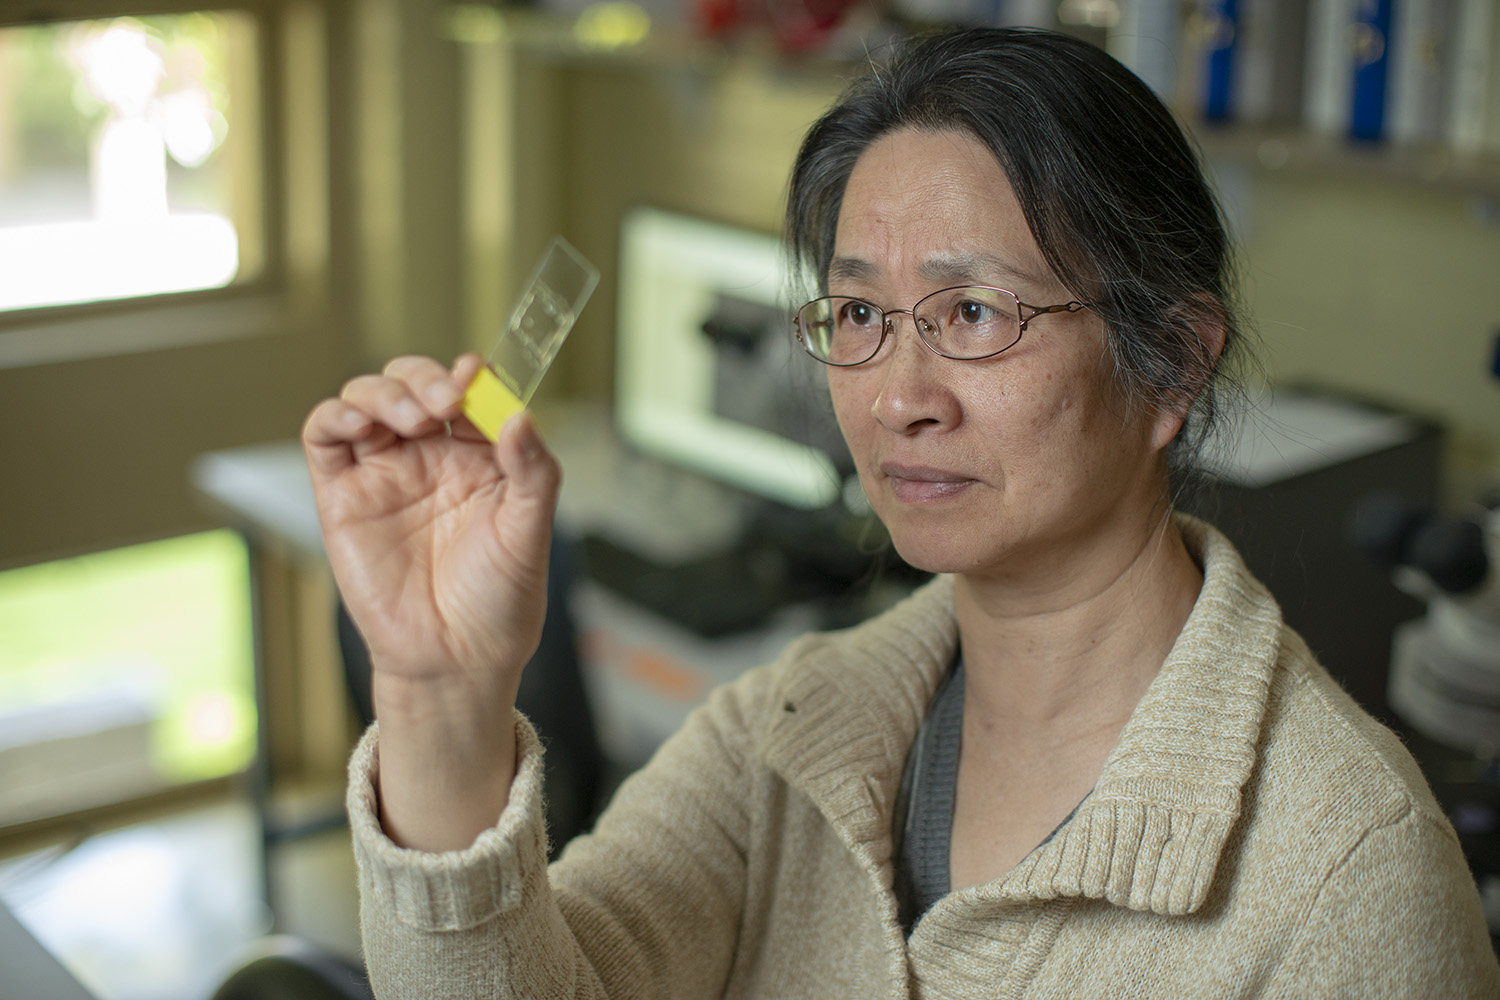 Raqefet under a microscope. Professor Li Liu finds and records germinated starch